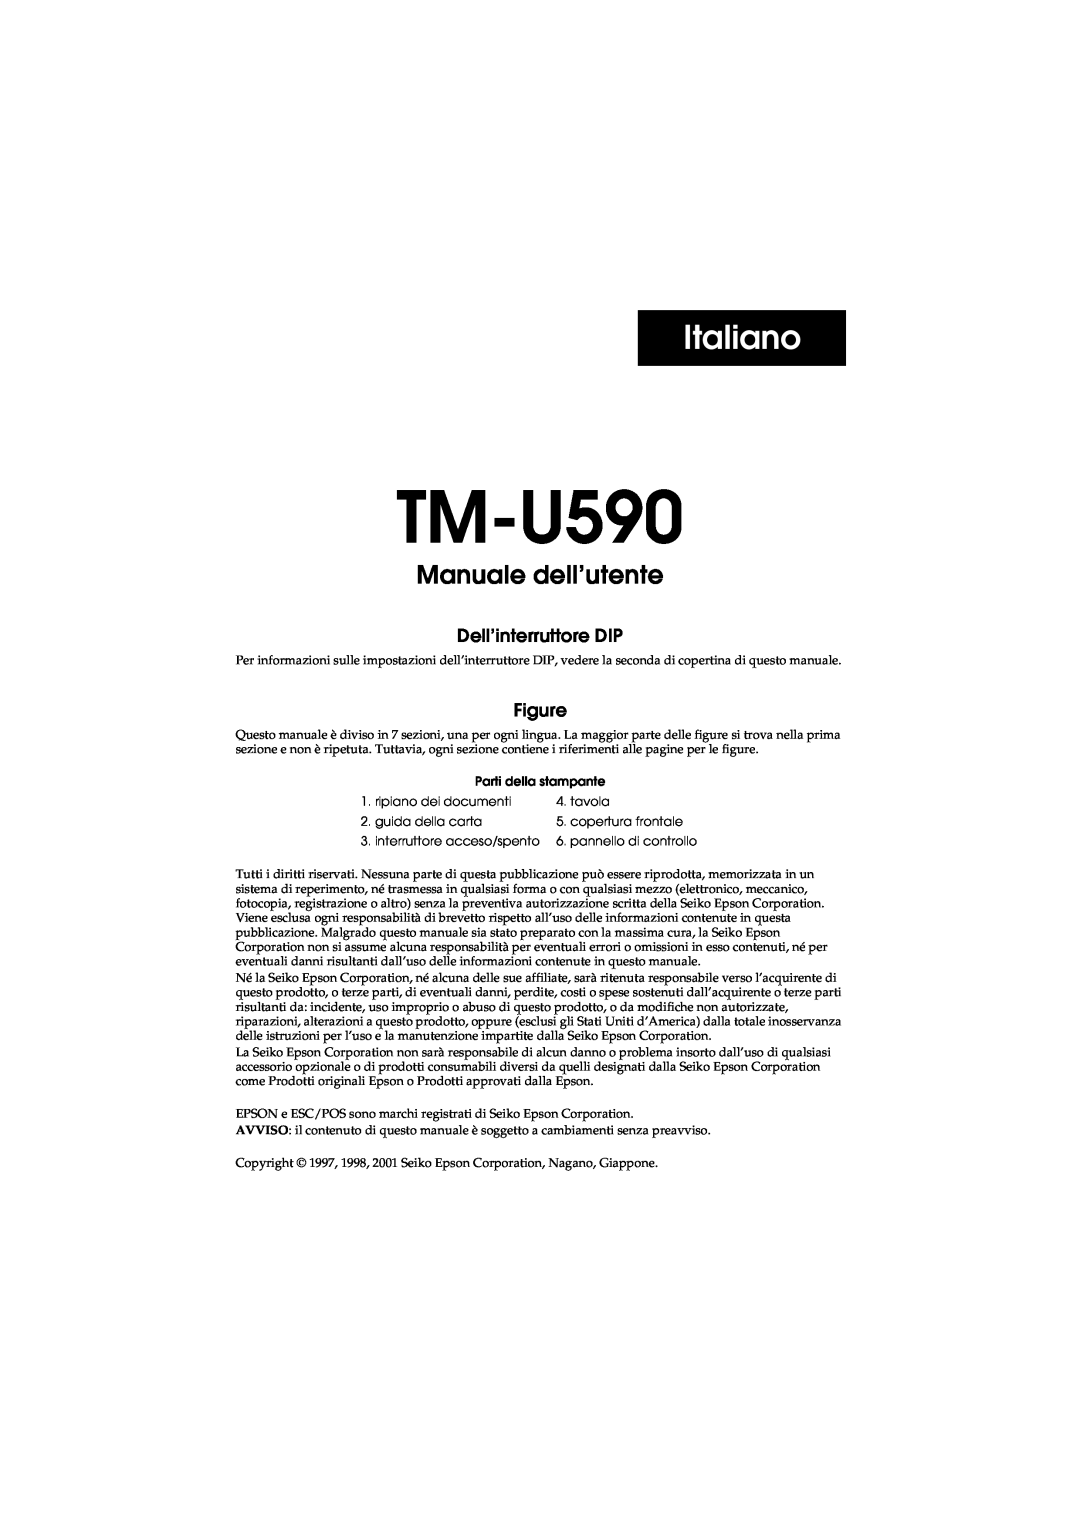 FARGO electronic user manual Italiano, TM-U590 Manuale dell’utente, Dell’interruttore DIP 